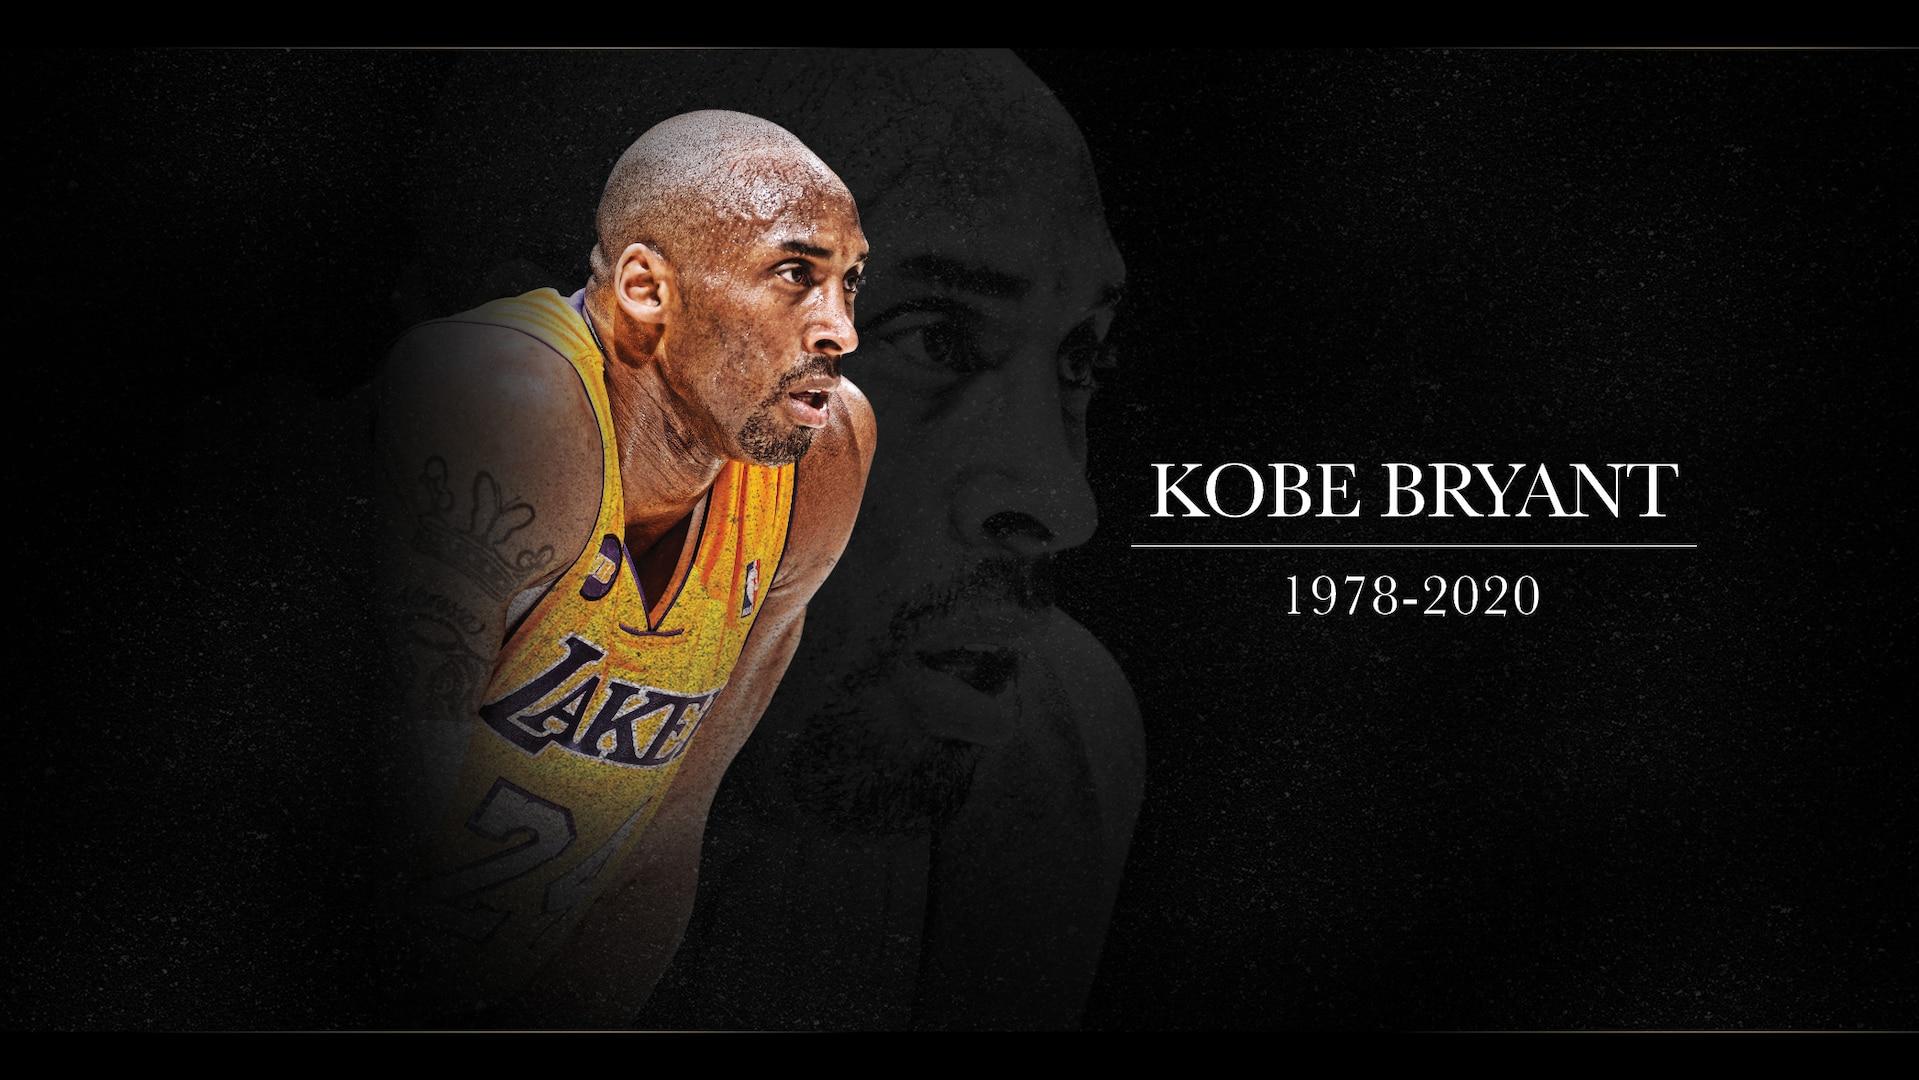 Kobe Bryant se convirtió en una de las búsquedas más frecuentes tras su muerte